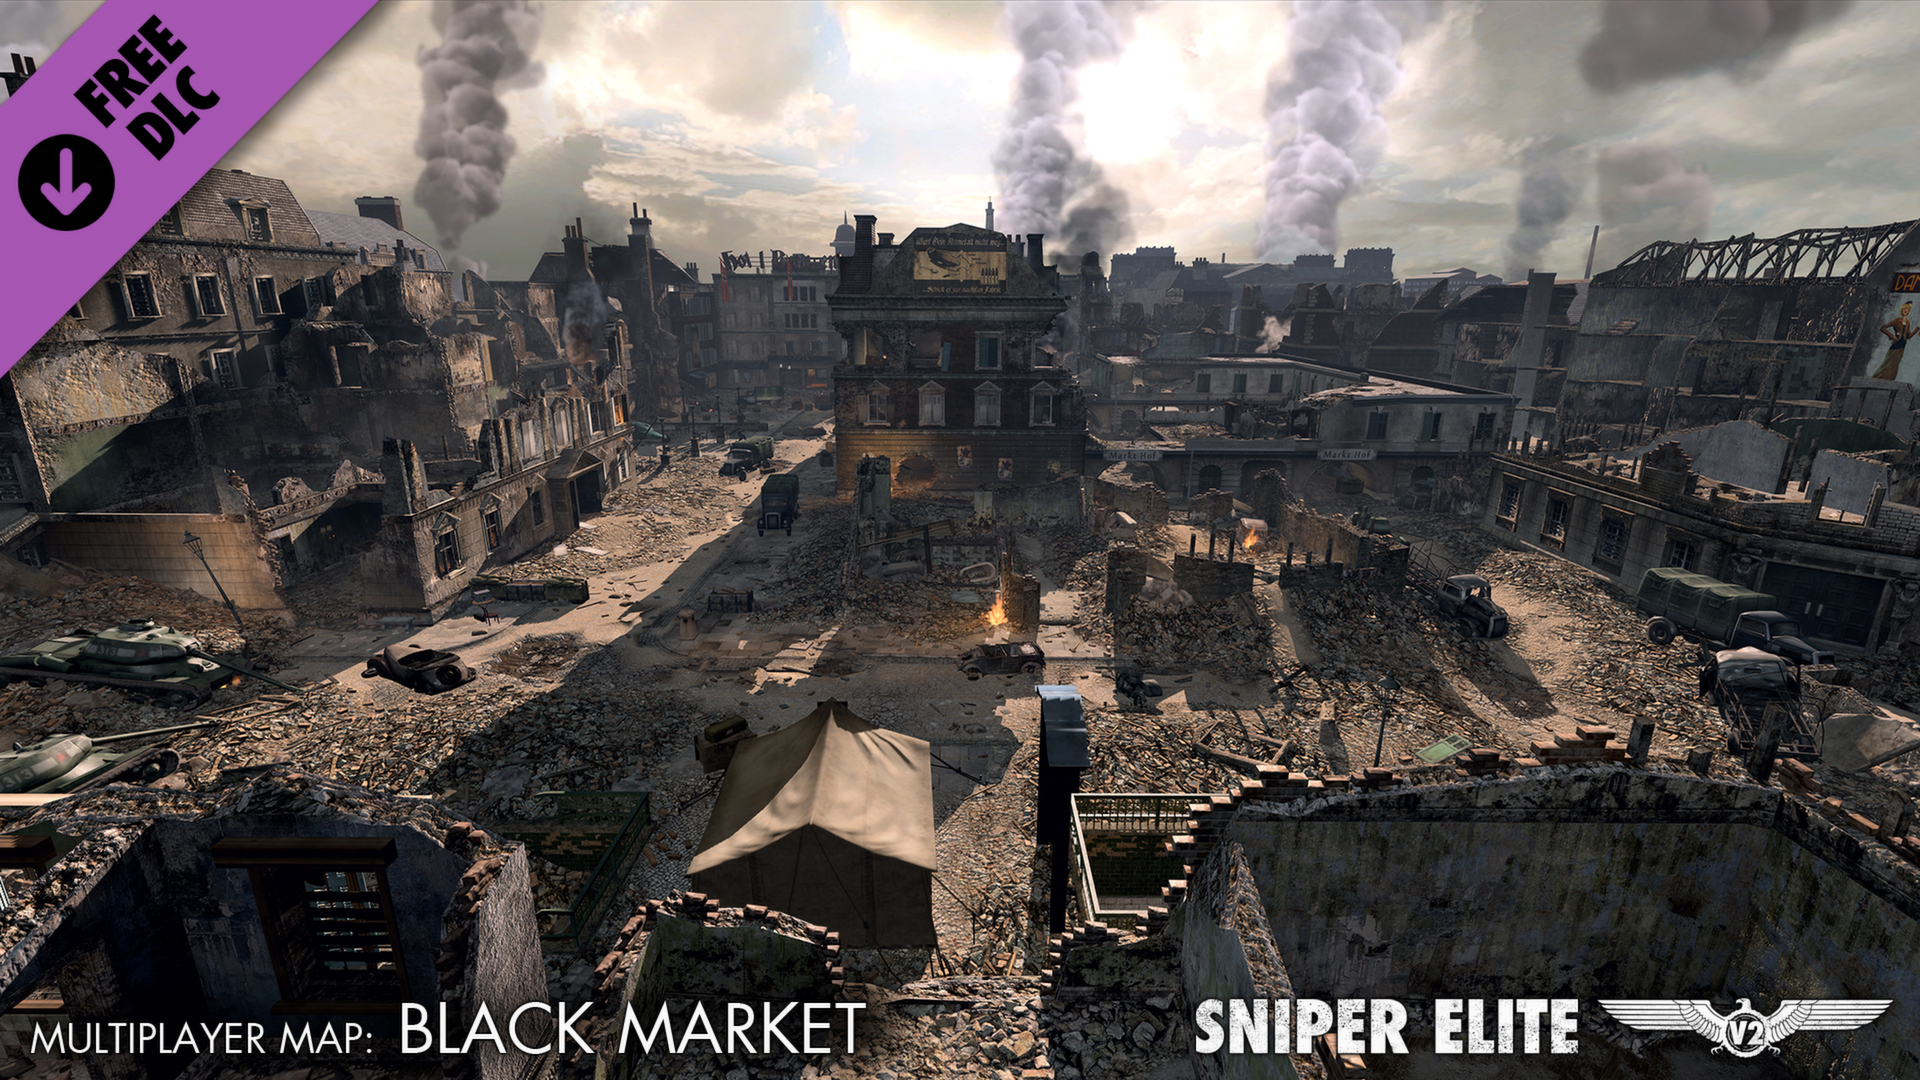 sniper elite v2 free download pc game full version crack